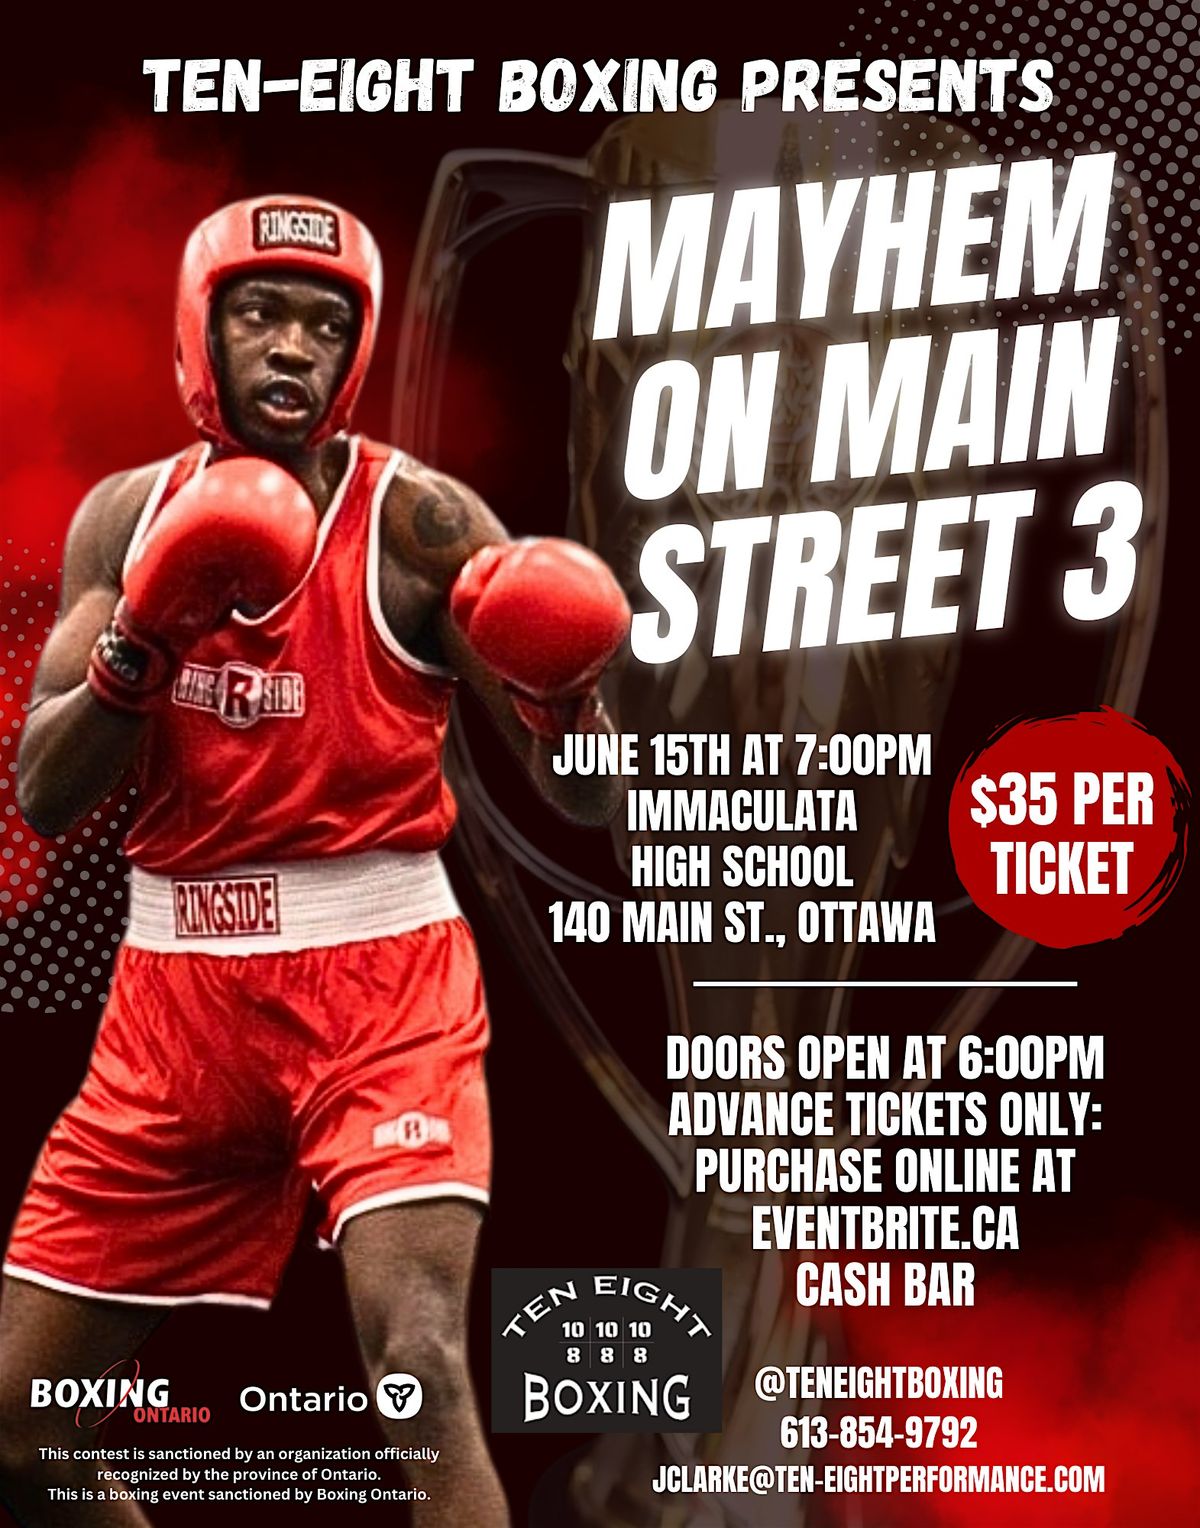 MAYHEM ON MAIN STREET 3